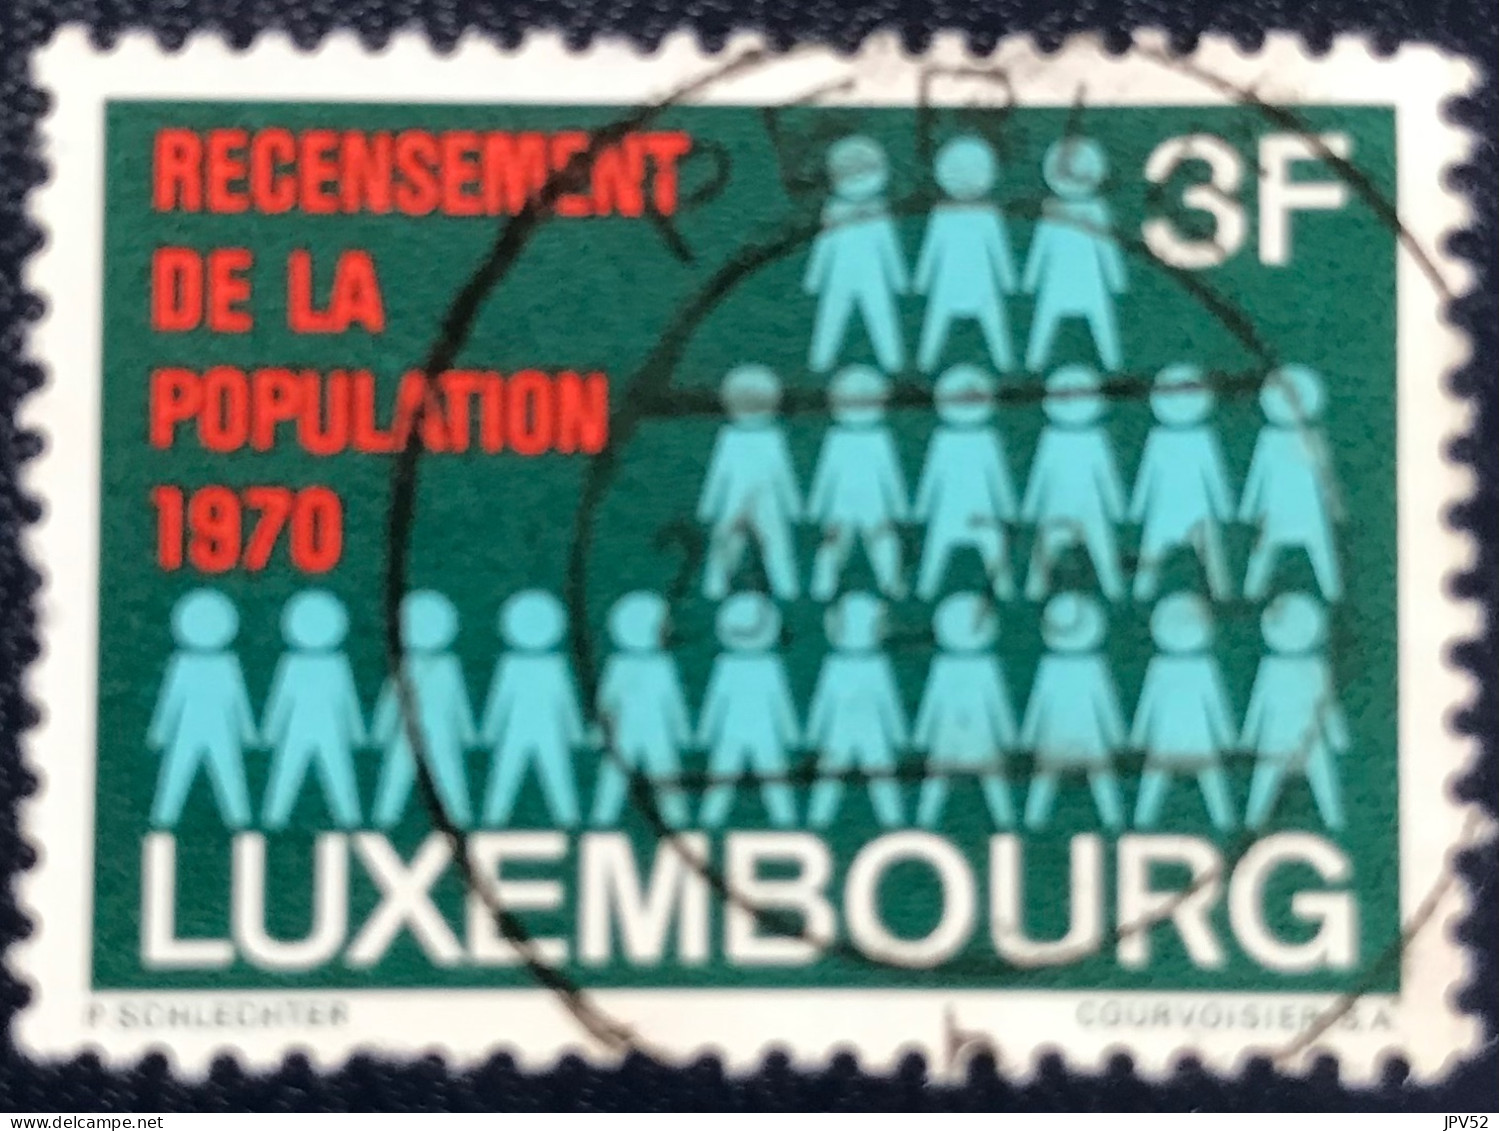 Luxembourg - Luxemburg - C18/31 - 1970 - (°)used - Michel 811 - Bevolkingspictogram - Gebruikt